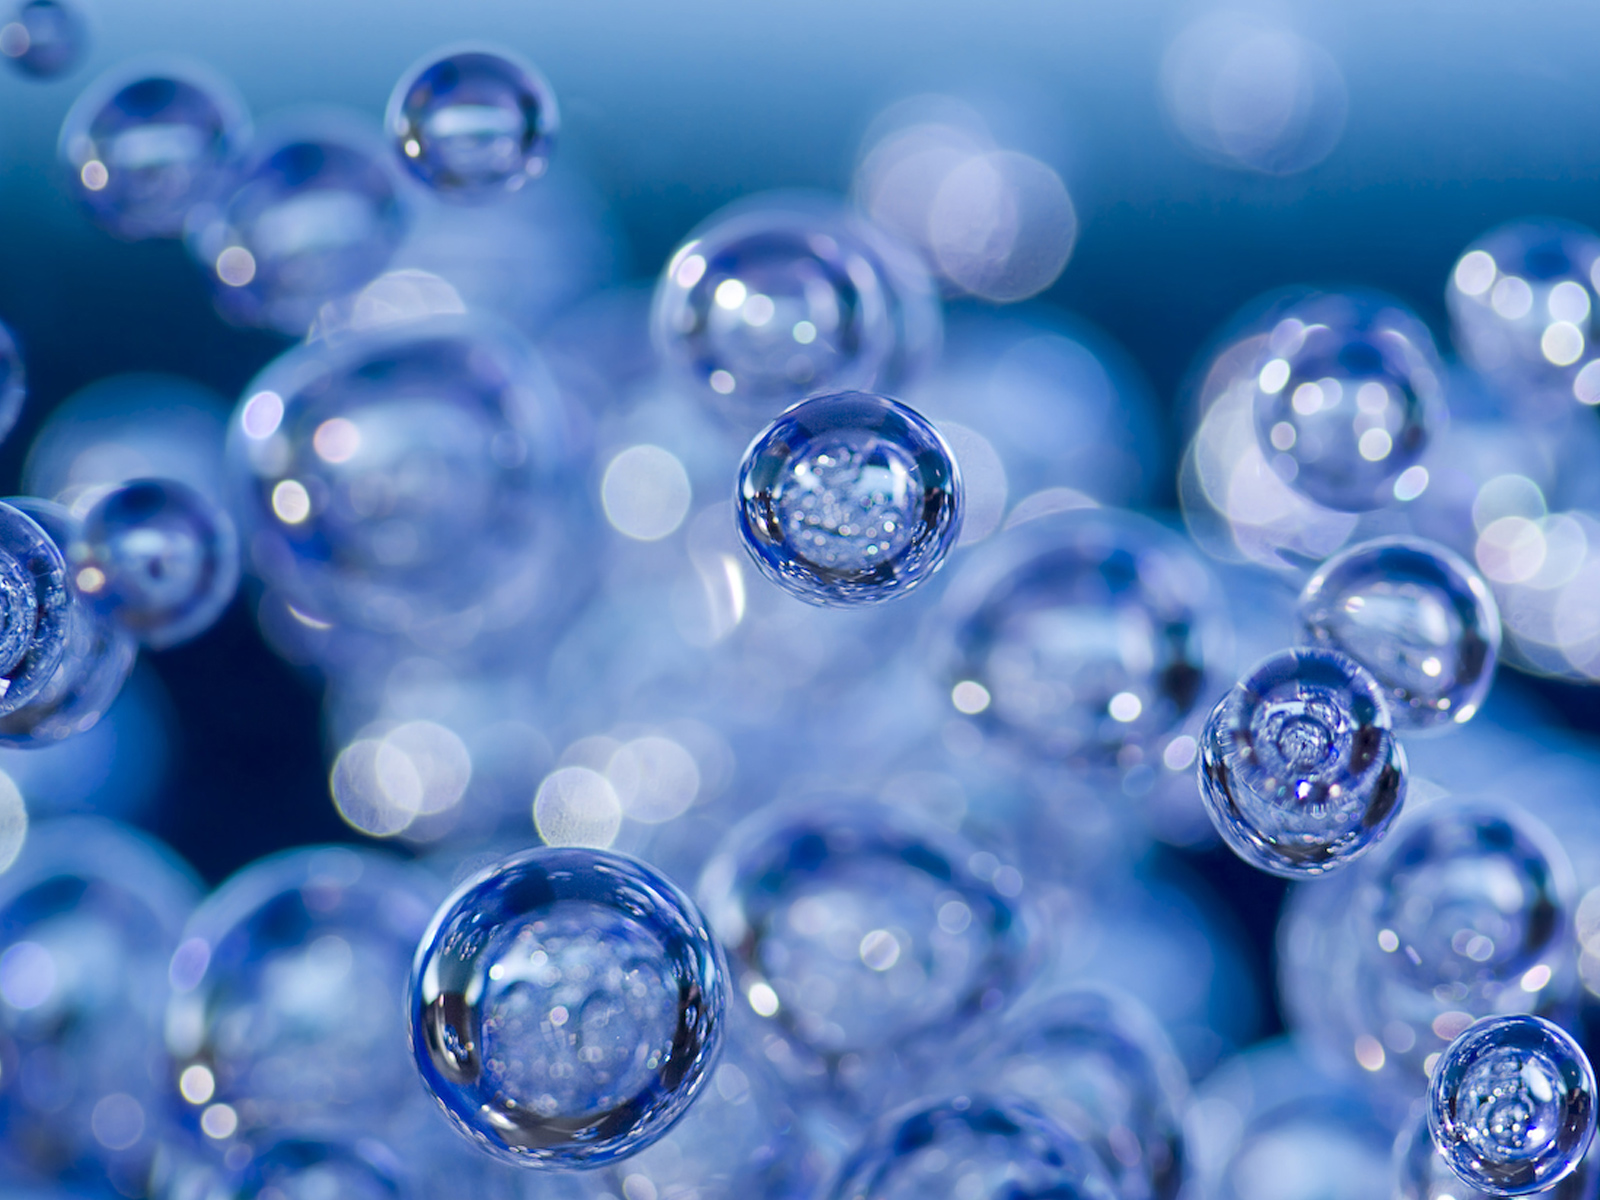 Молекула воздуха меньше молекулы воды